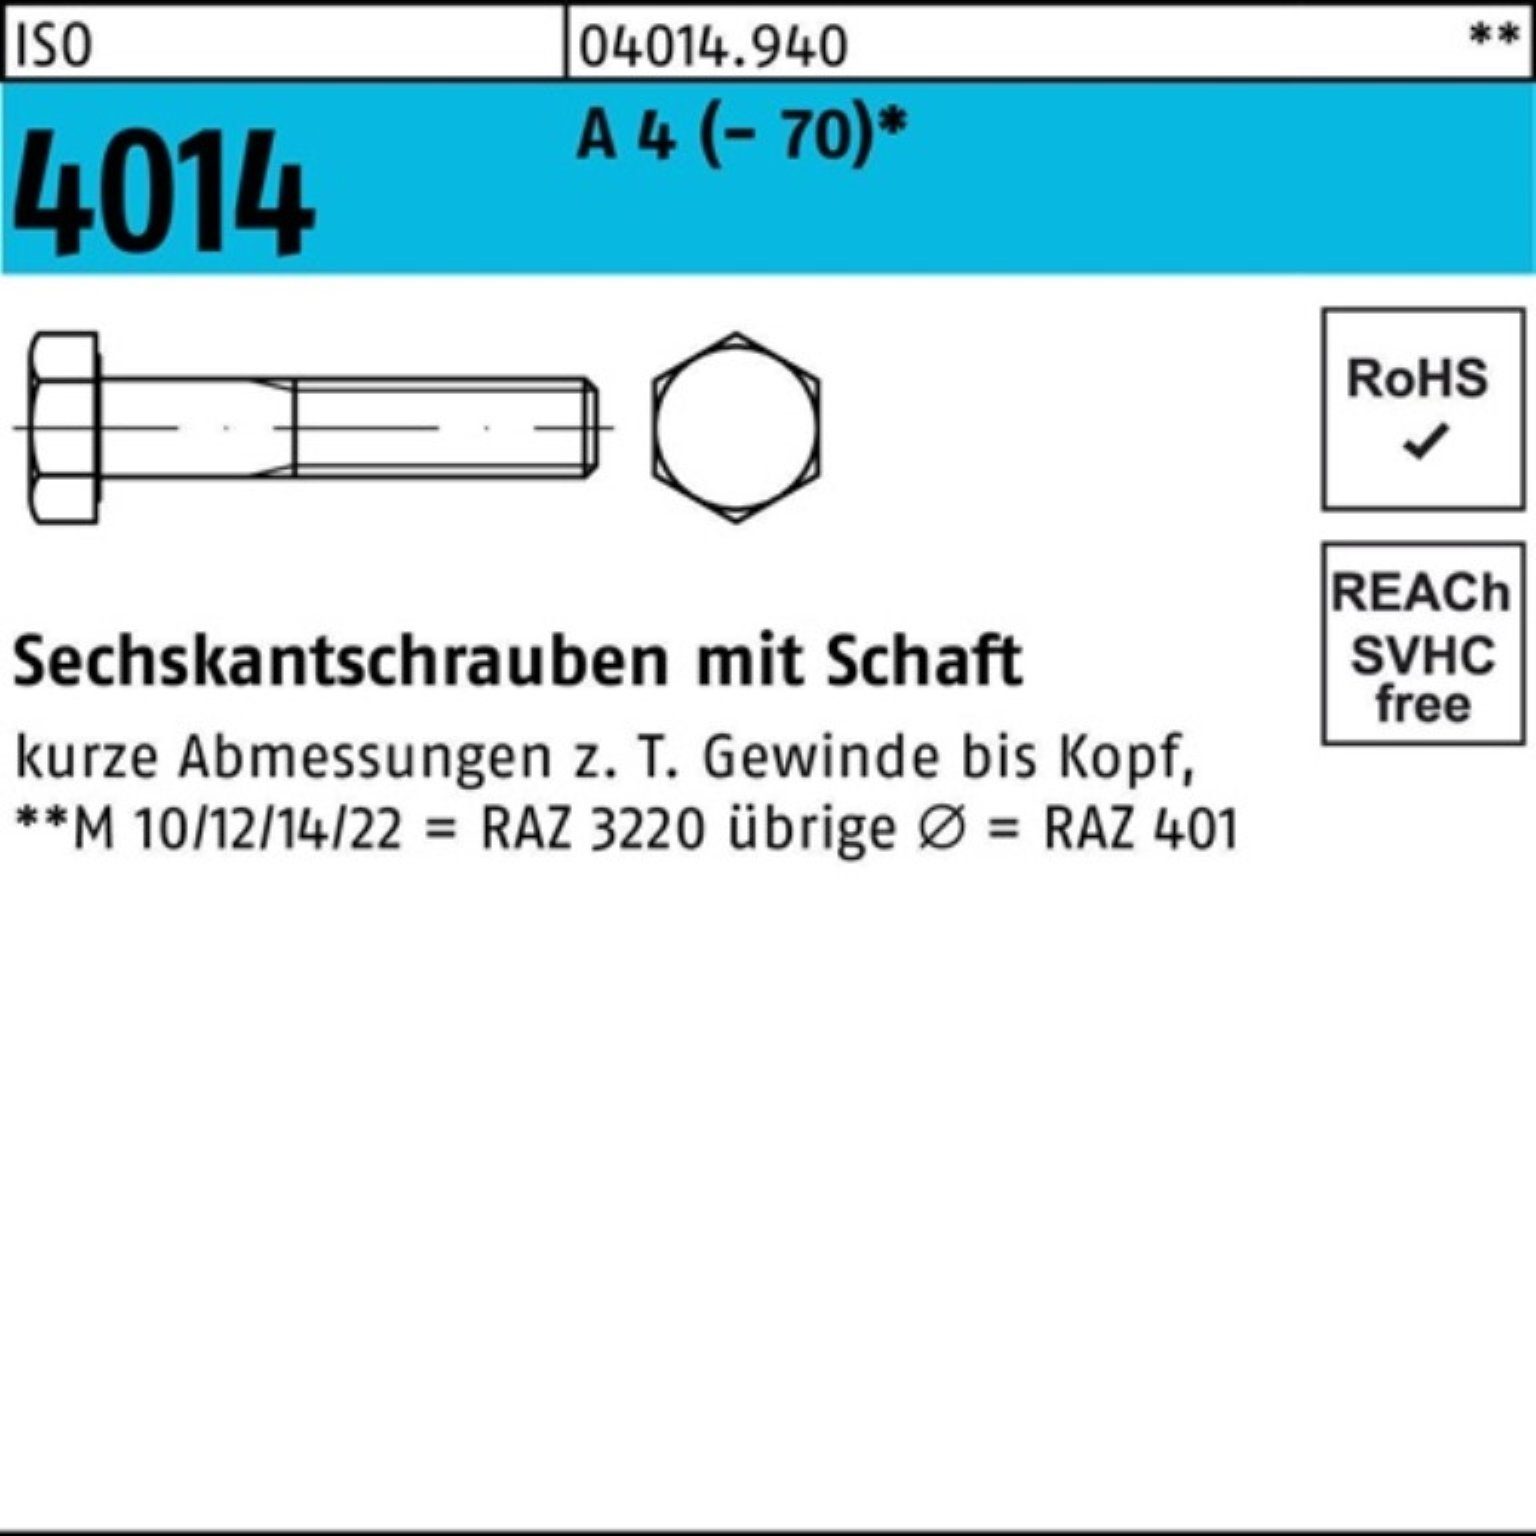 Bufab Sechskantschraube 100er Pack Sechskantschraube ISO 4014 Schaft M8x 65 A 4 (70) 100 St